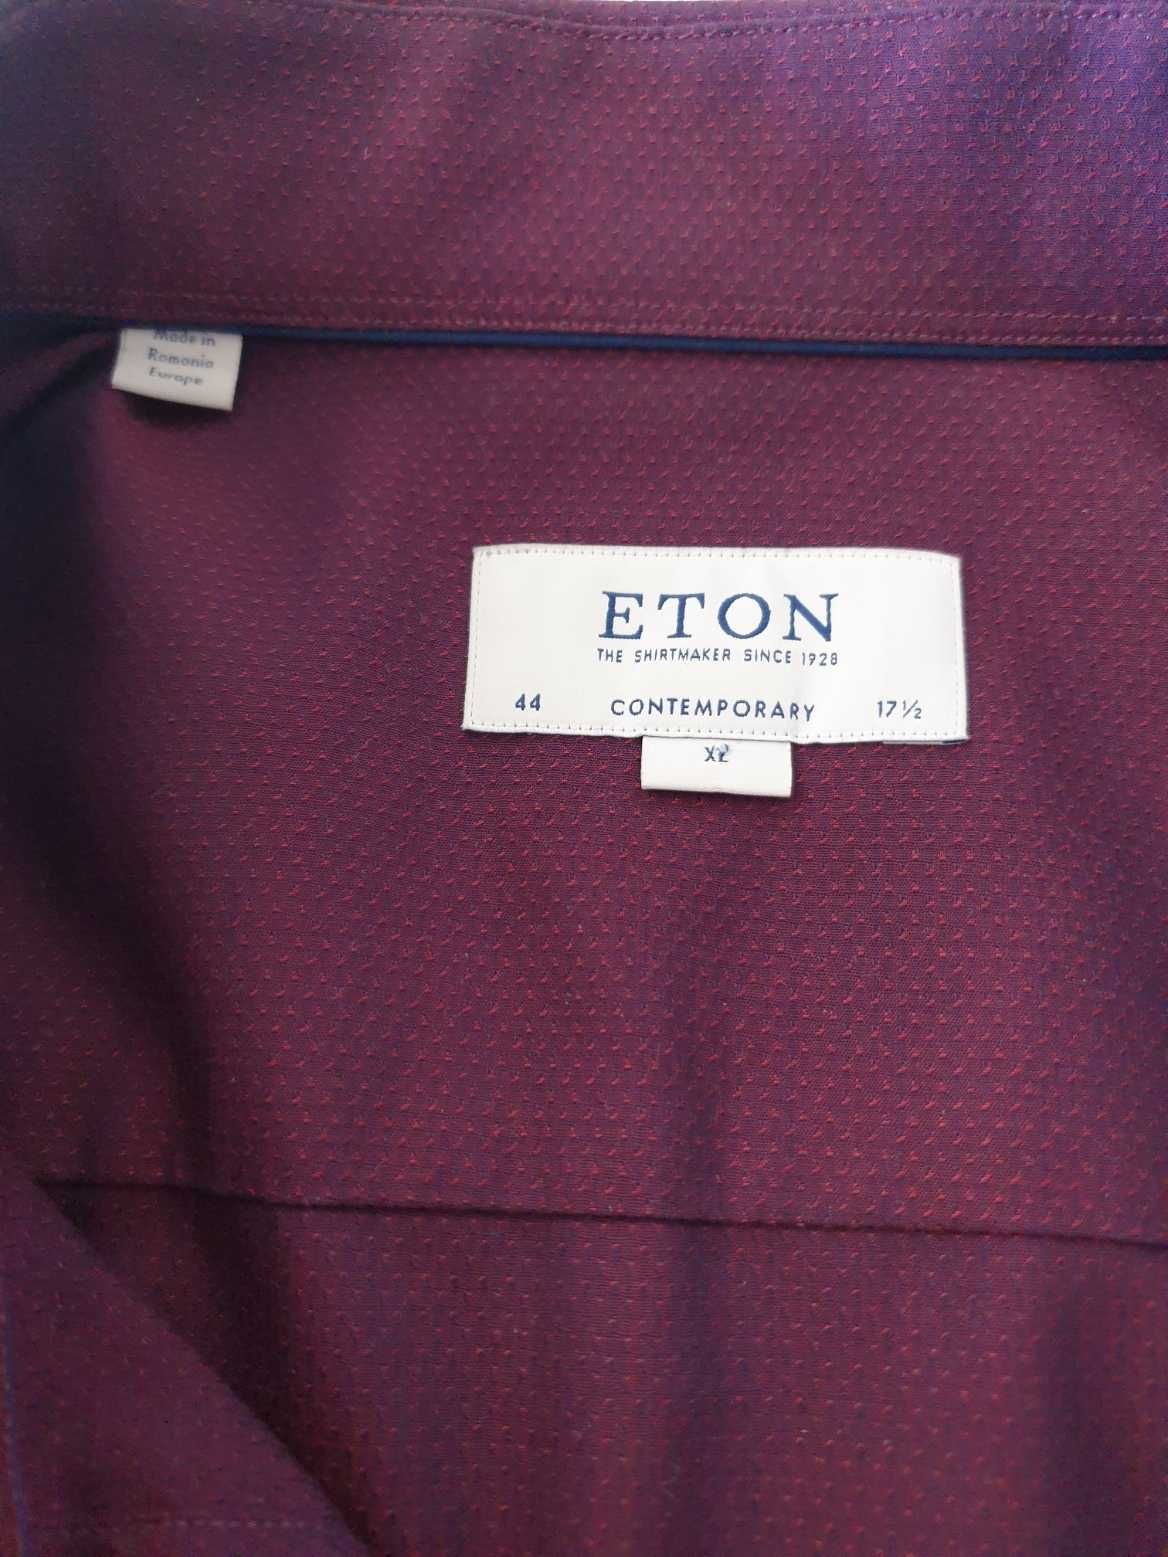 Високоякісна сорочка фірми Eton нова.Оригінал.44-17 1/2.Слім